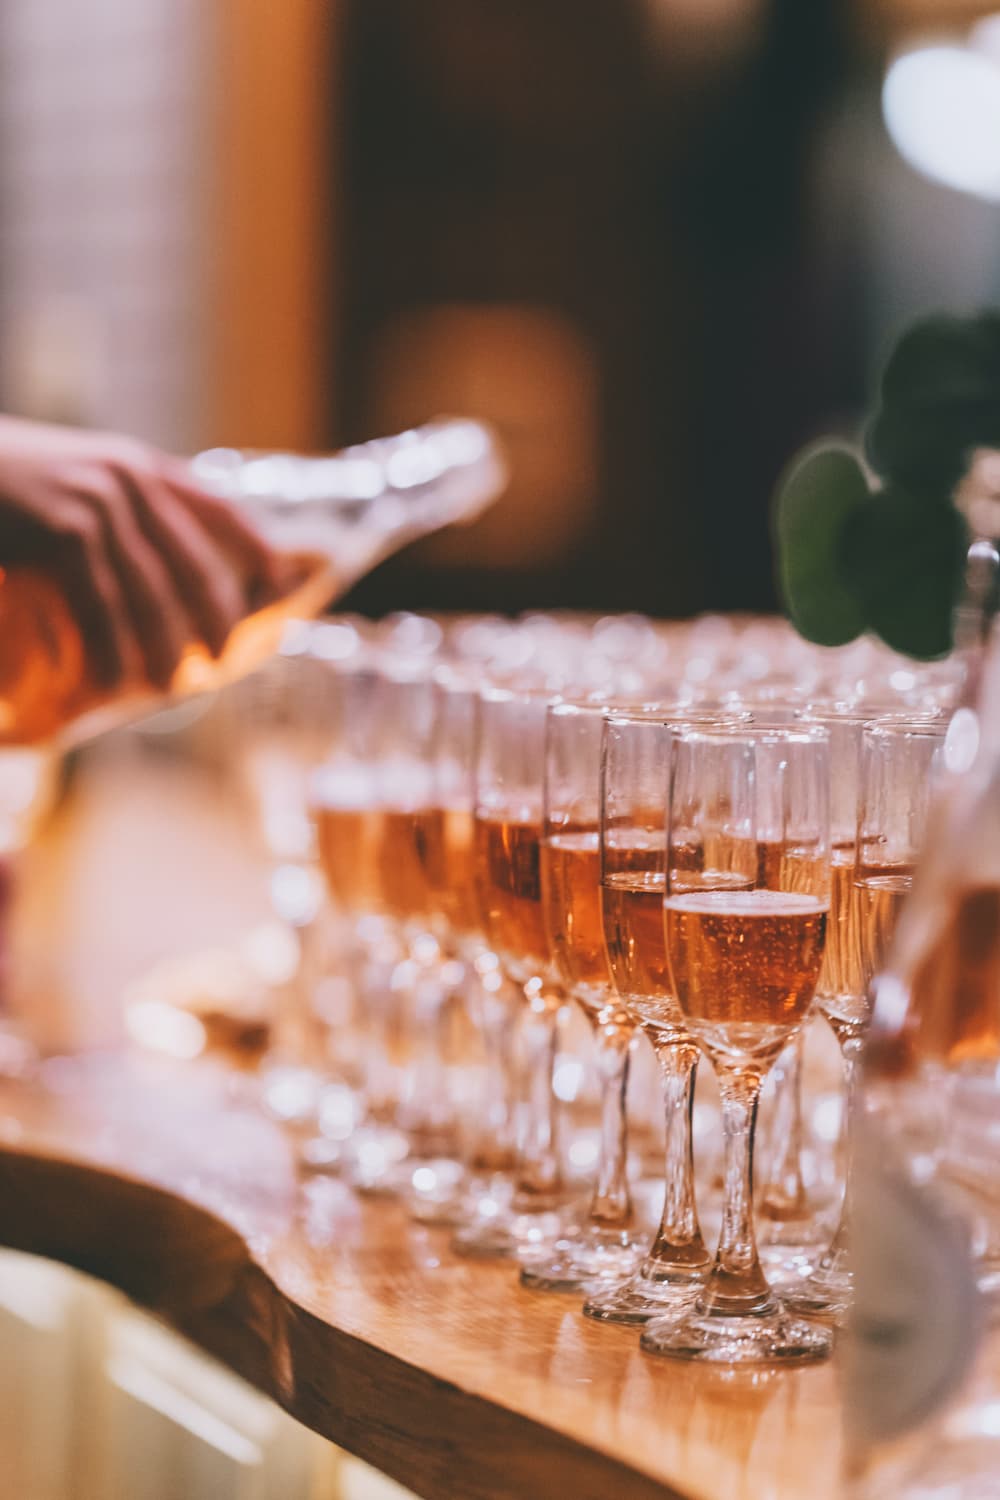 Champagne é servido em taças dispostas sobre a mesa. Imagem disponível em Pexels.